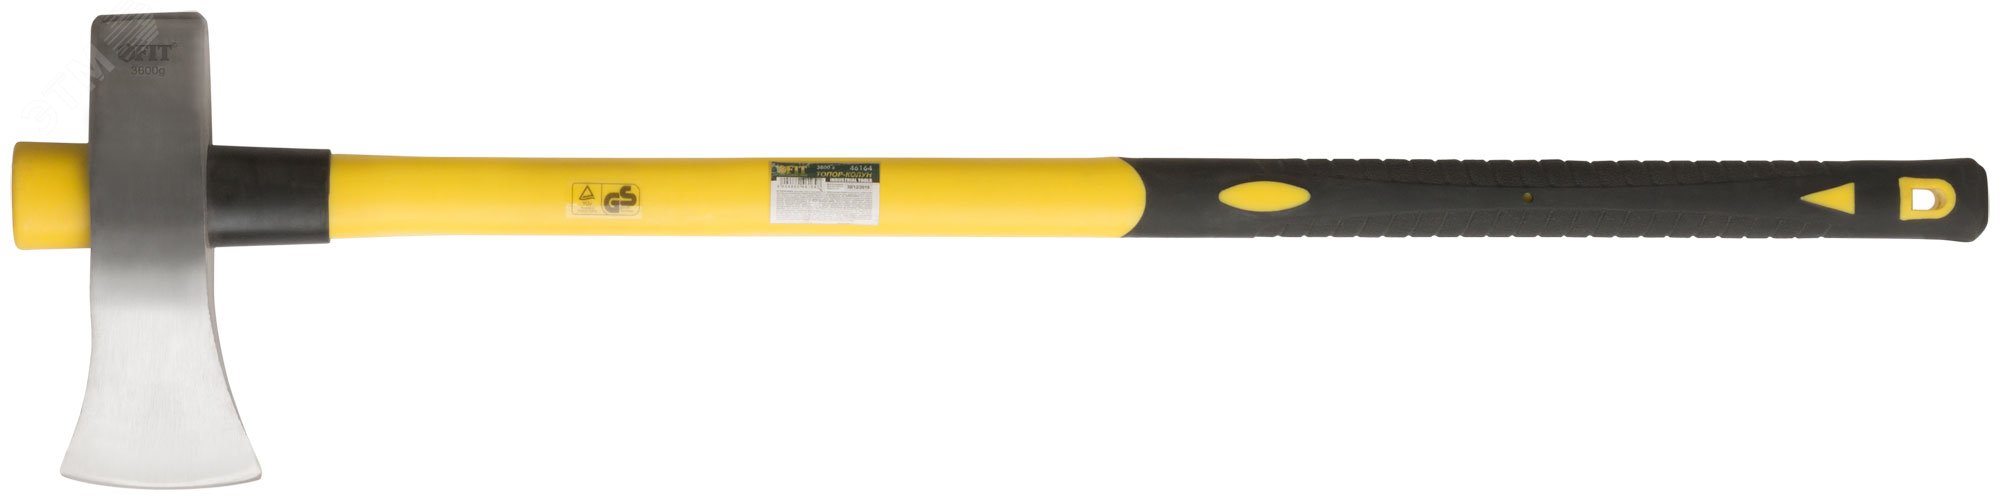 Топор-колун кованый, фиберглассовая длинная ручка 900 мм, 3600 гр 46164 FIT - превью